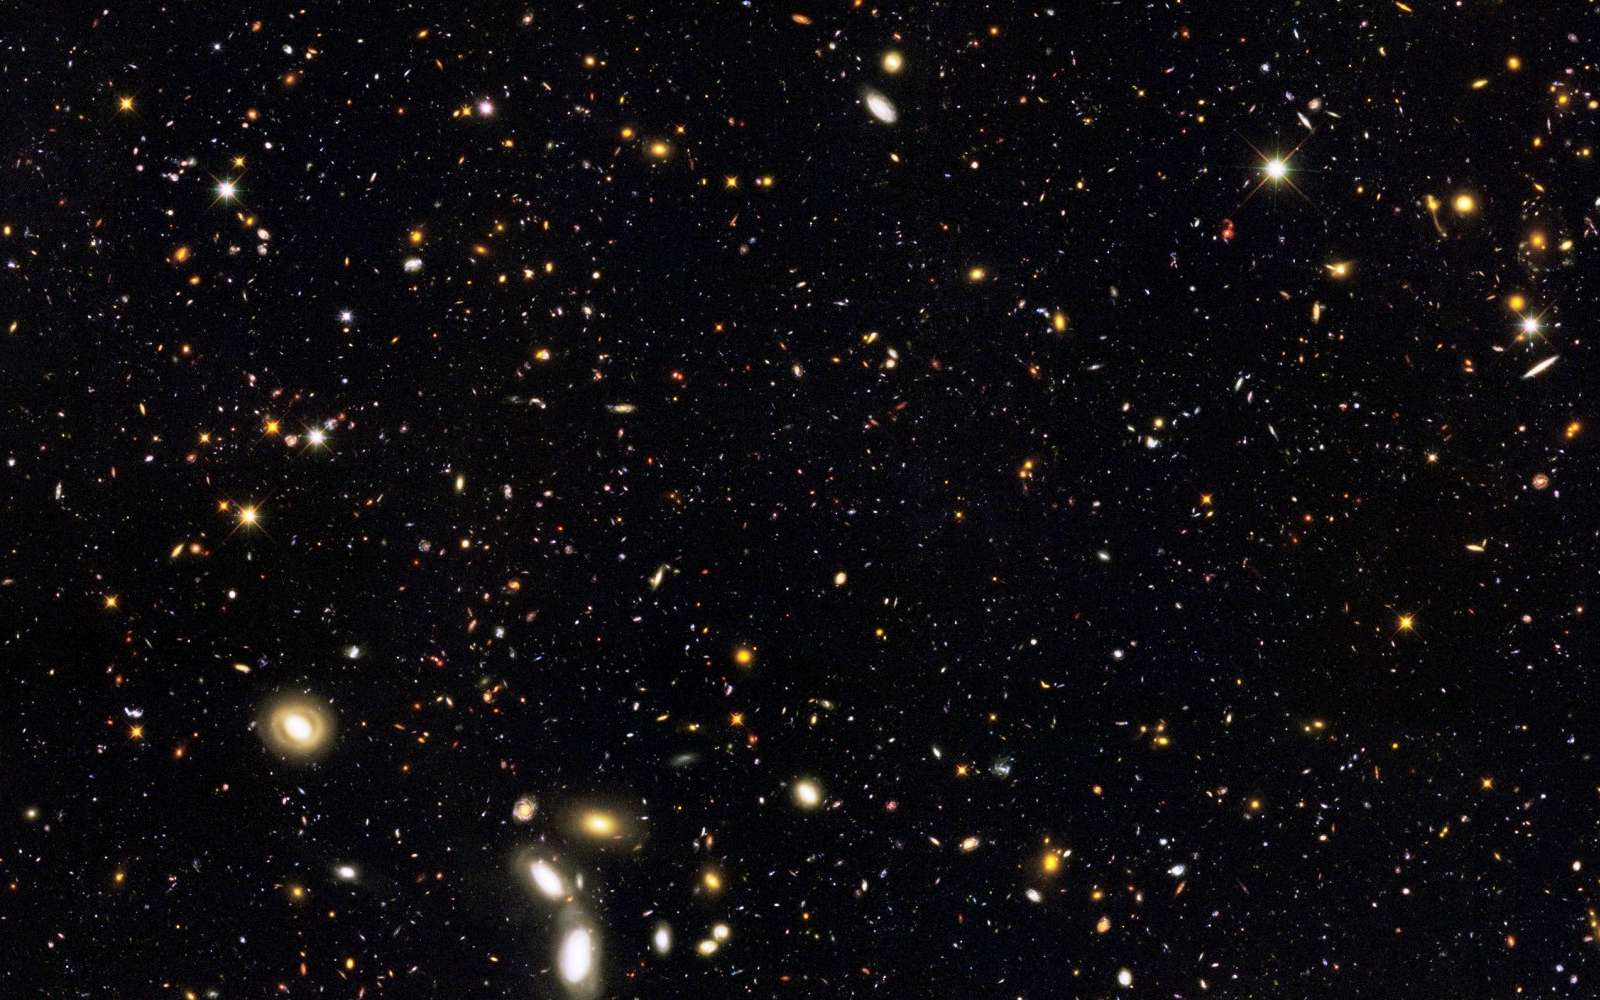 Une des images prises fin 2009 par Hubble lors d'une campagne d'observations d'un champ profond de l'univers observable. C'est un assemblage de mesure réalisées de l'infrarouge à l'ultraviolet, montrant des milliers de galaxies sur une période de 12 milliards d'années de l'histoire du cosmos. © Nasa, Esa